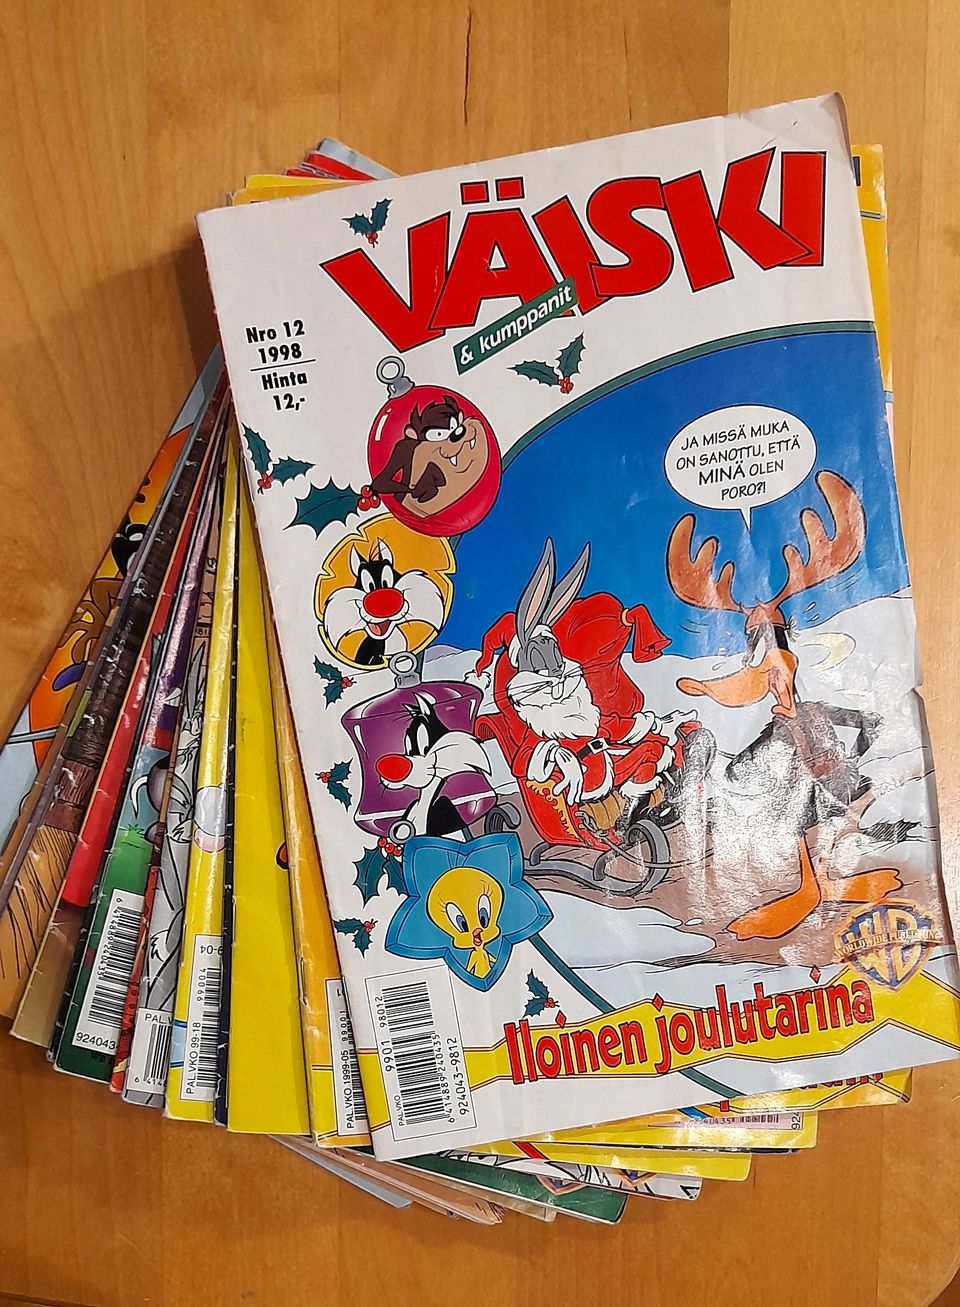 Väiski-sarjakuvan vuosikerta 1999 kolmella eurolla